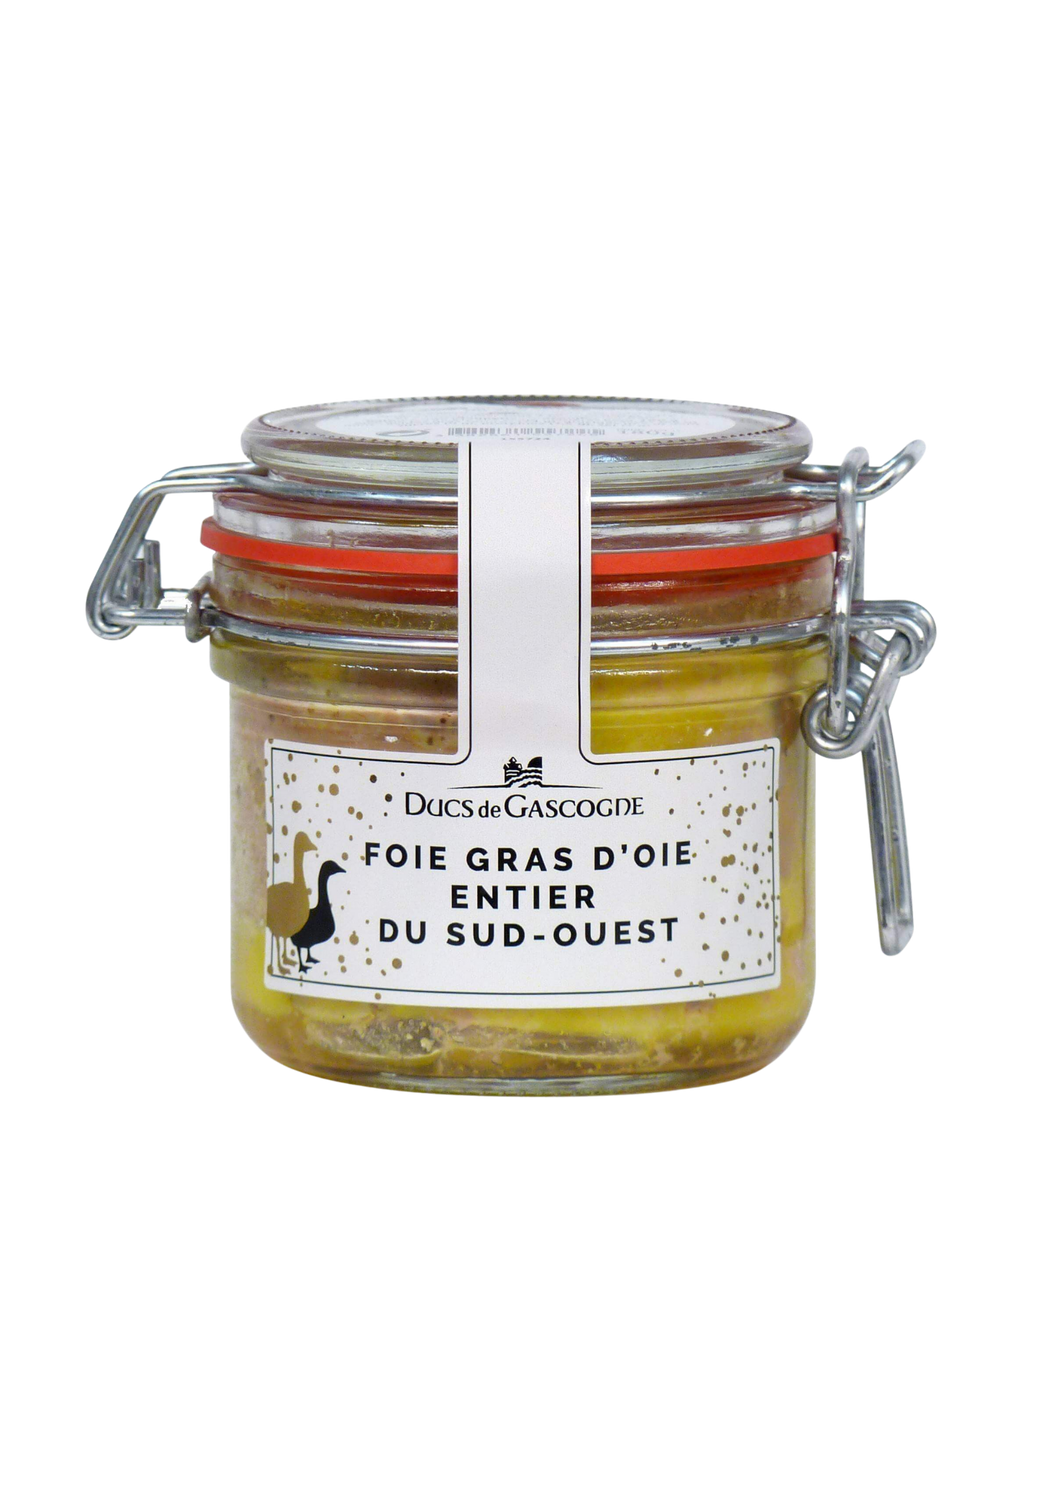 Foie gras d'oie entier - 180g